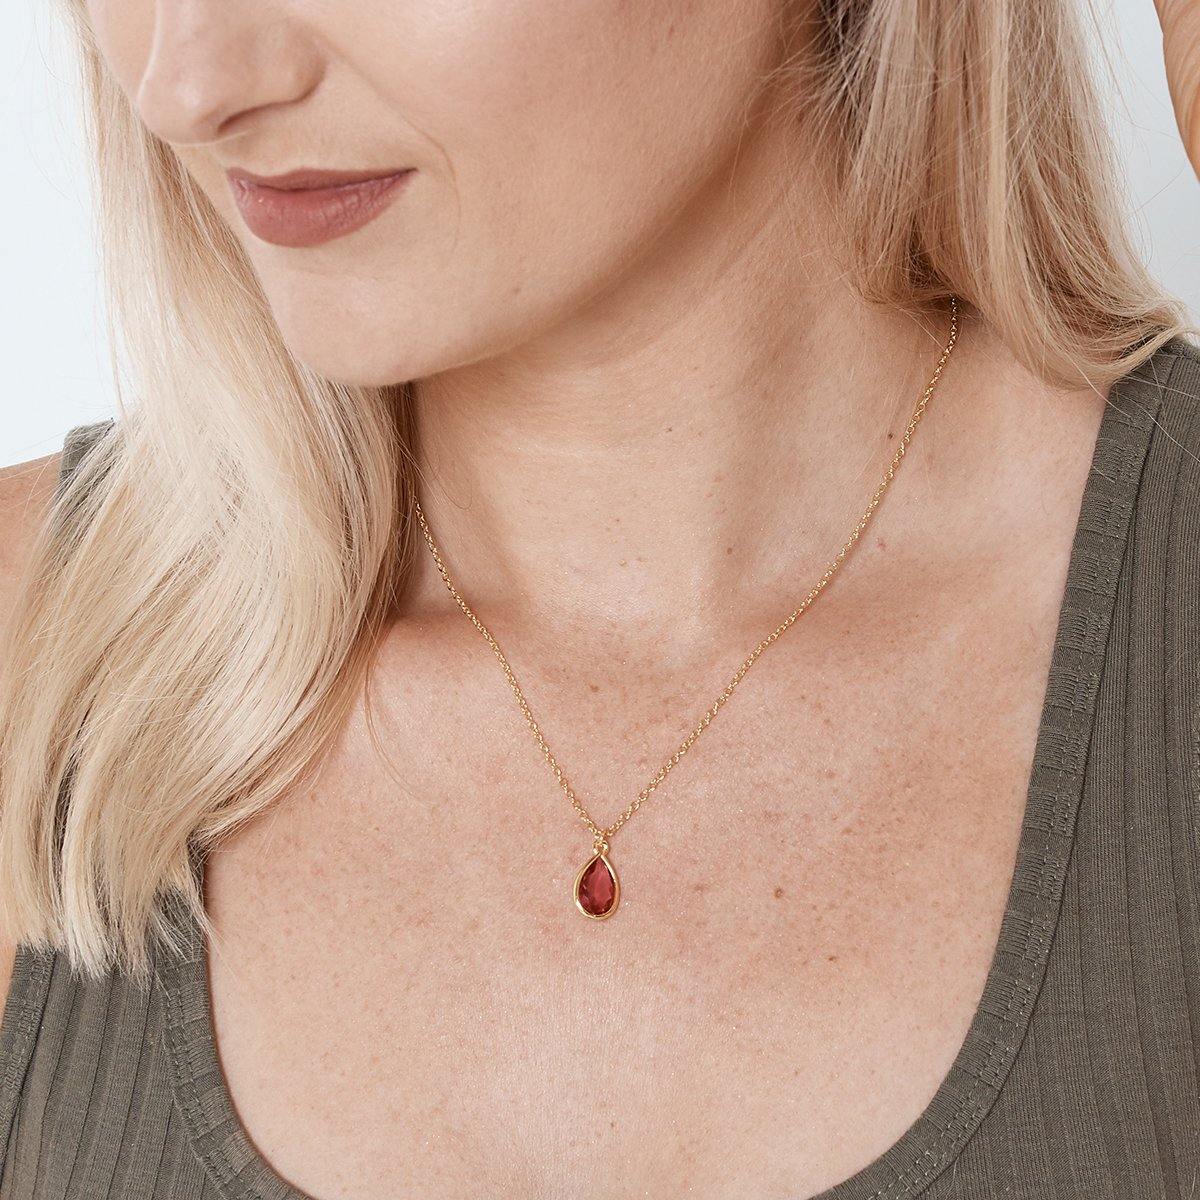 January Birthstone / Garnet Crystal Charm Necklace - Dear Ava